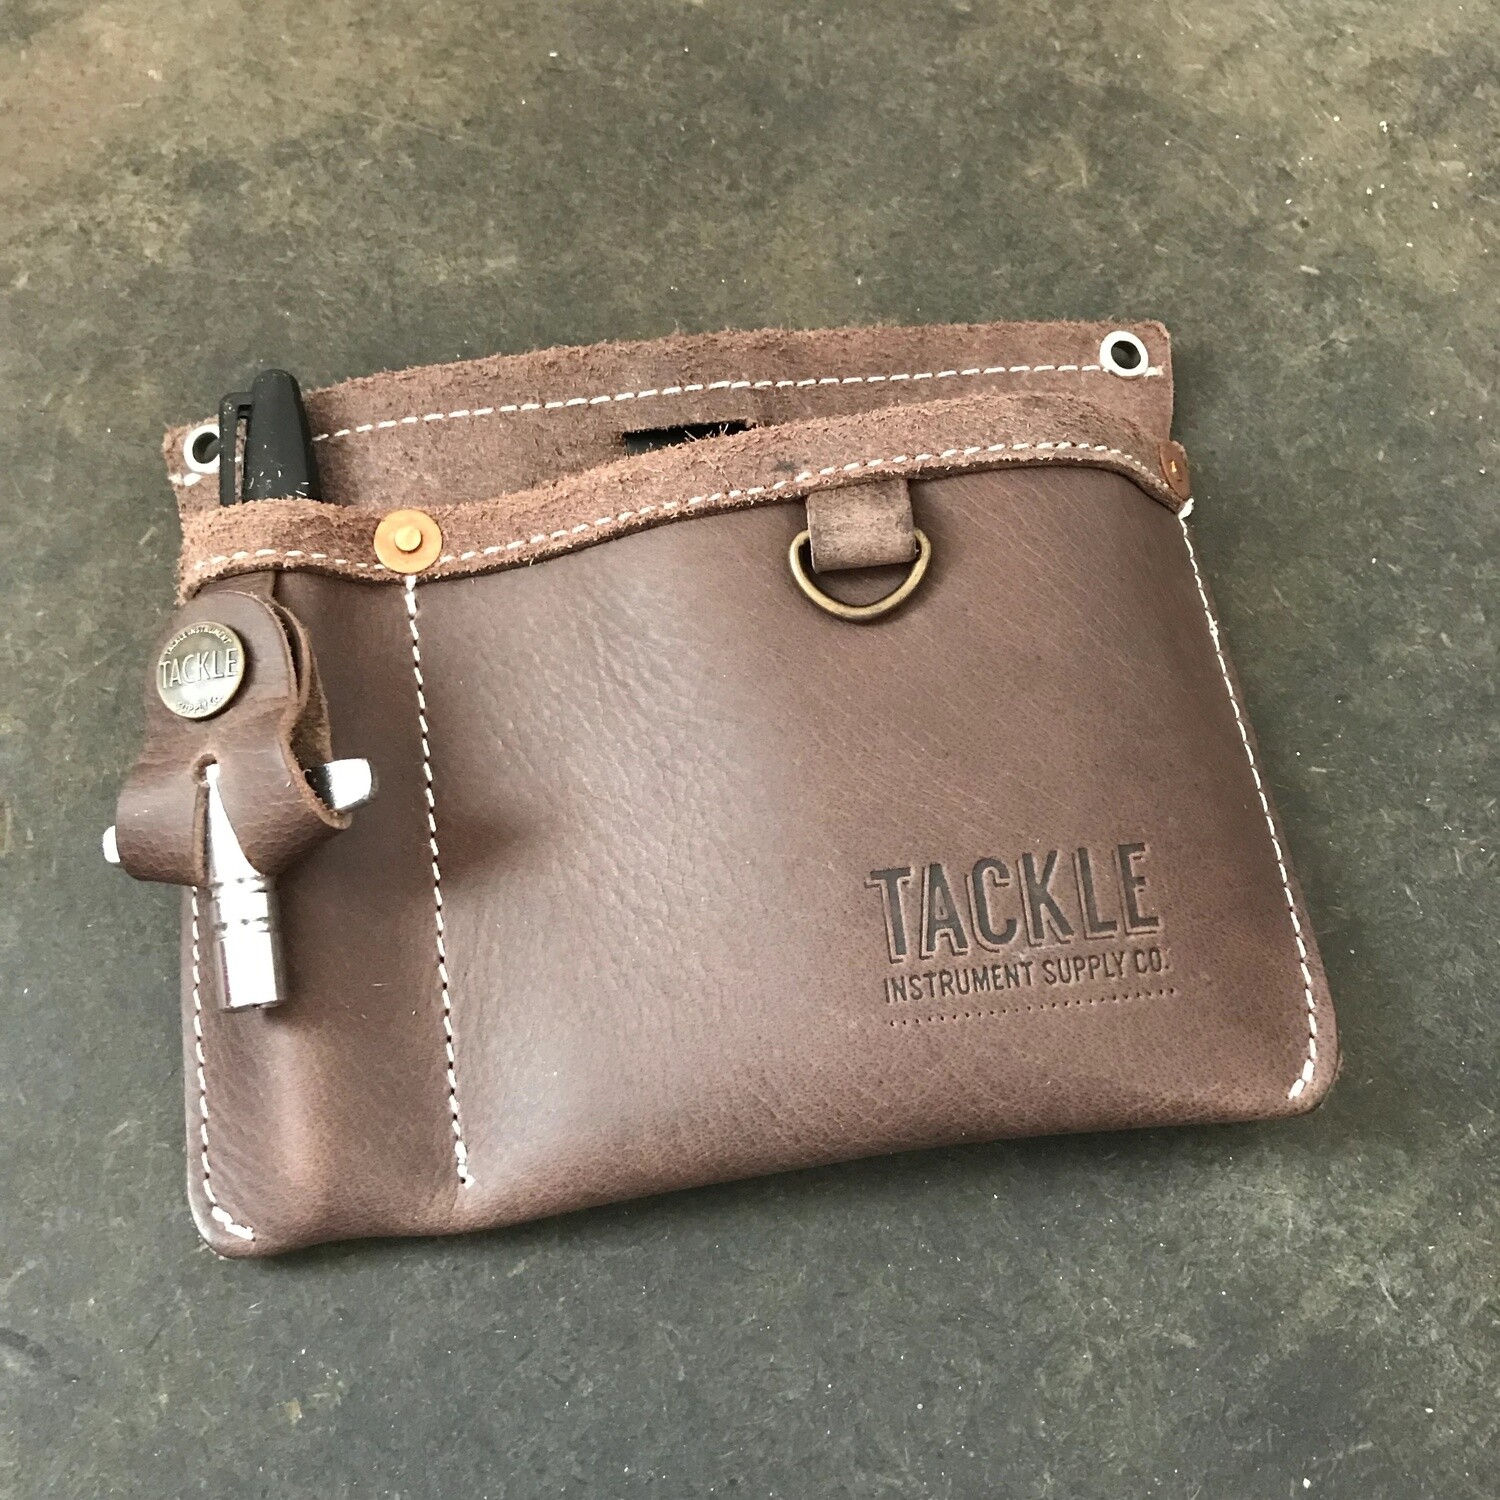 Tackle Instrument Gig Pocket